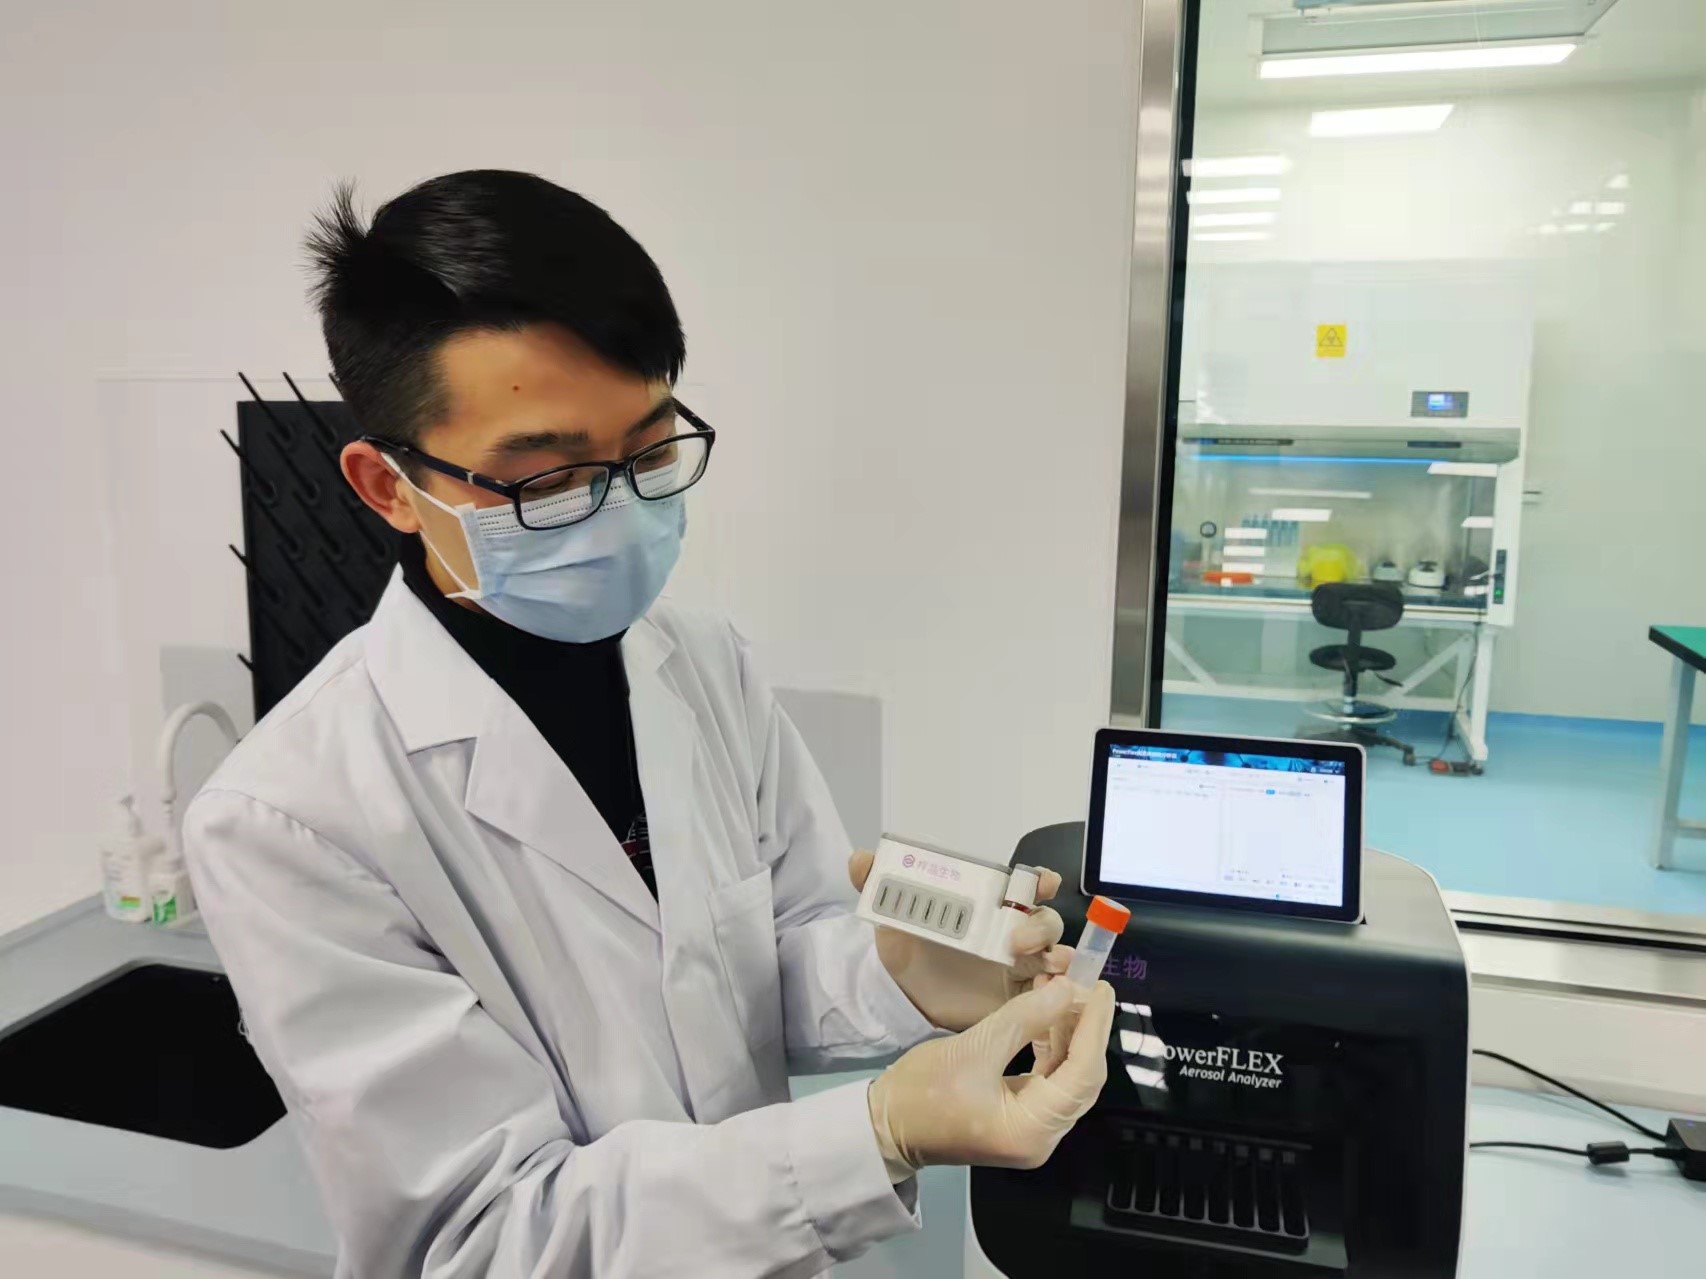 清华硕士生李保介绍气溶胶采集与分析检测流程。